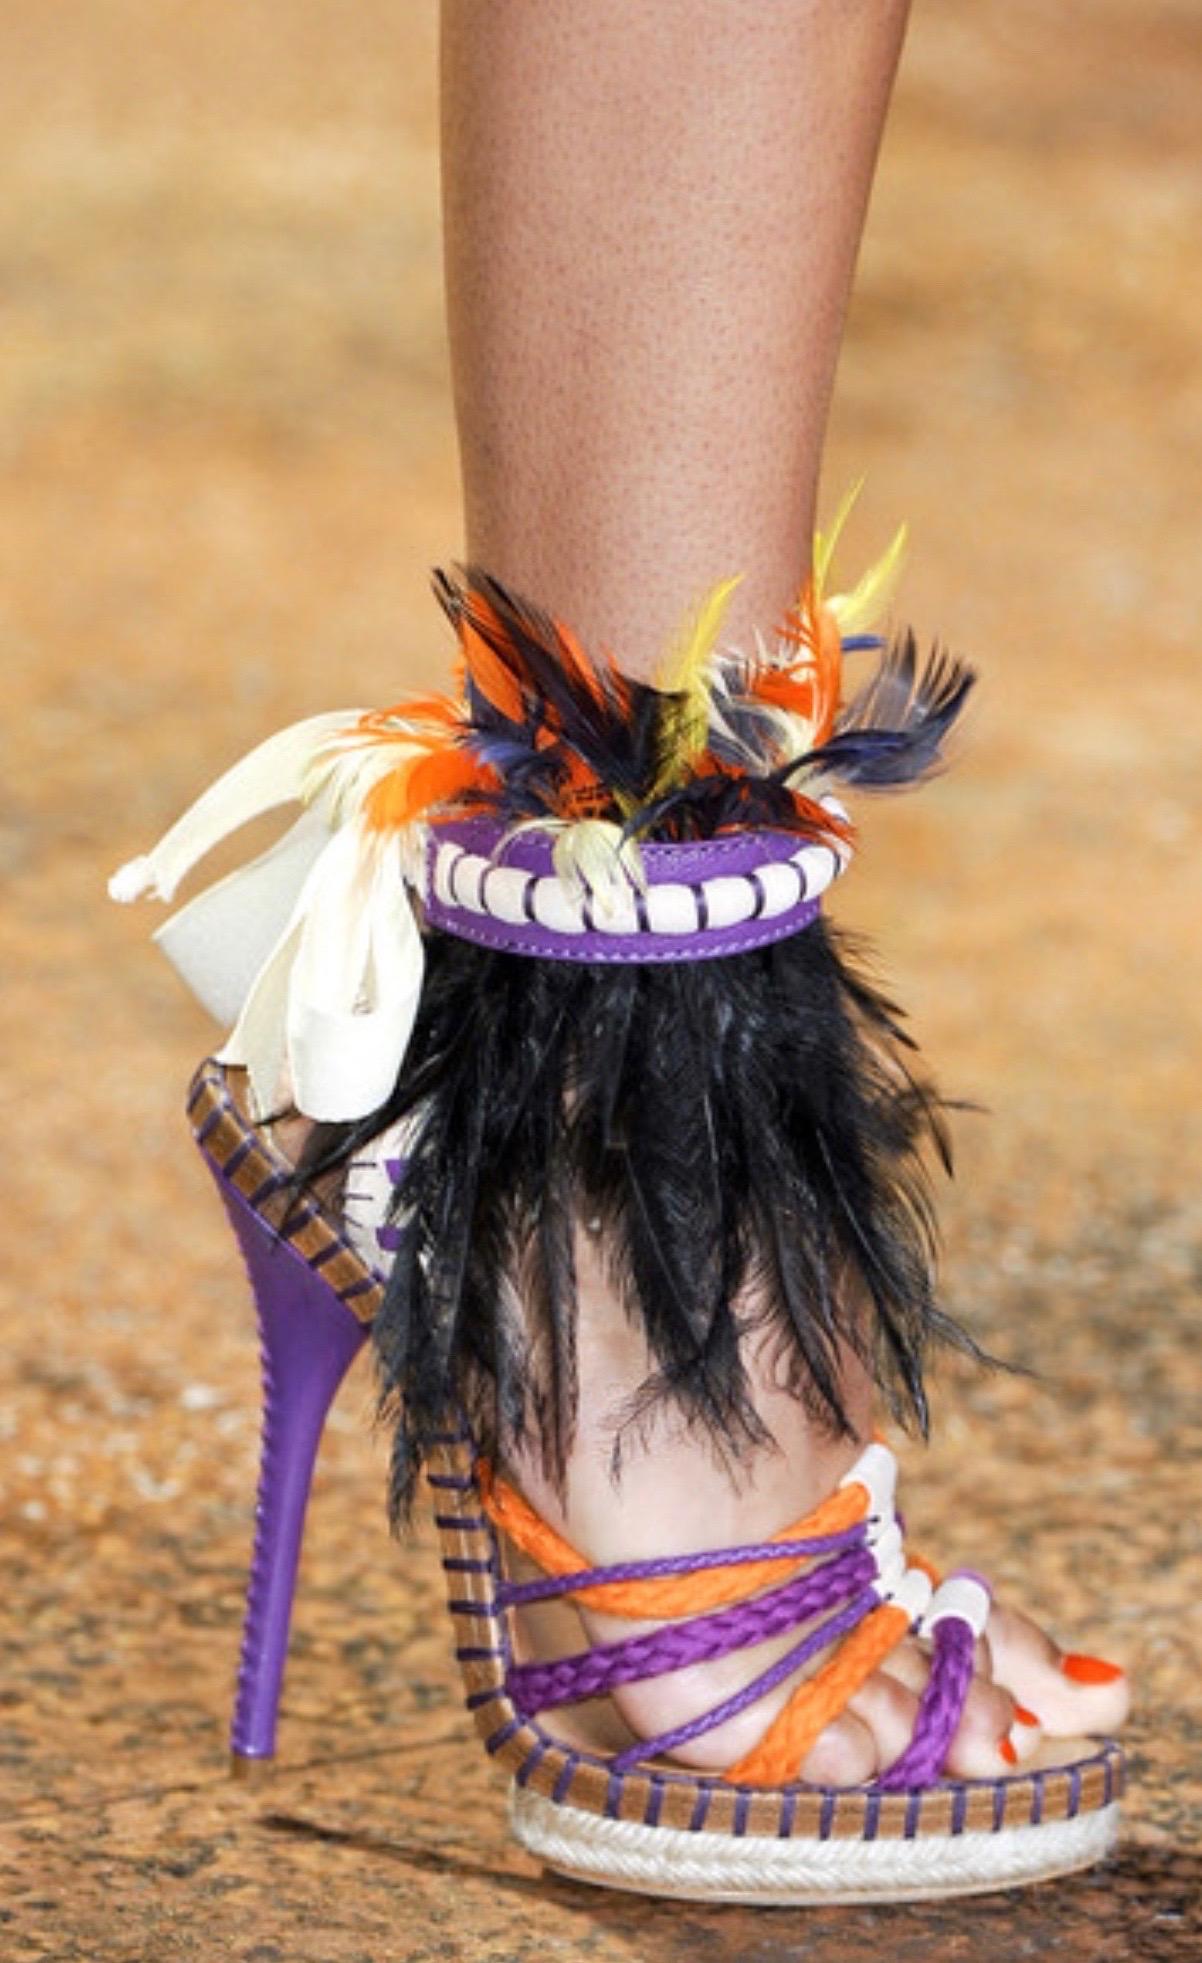 UNIQUE Unworn Christian Dior John Galliano Exotic Show Runway High Heel Sandals 6